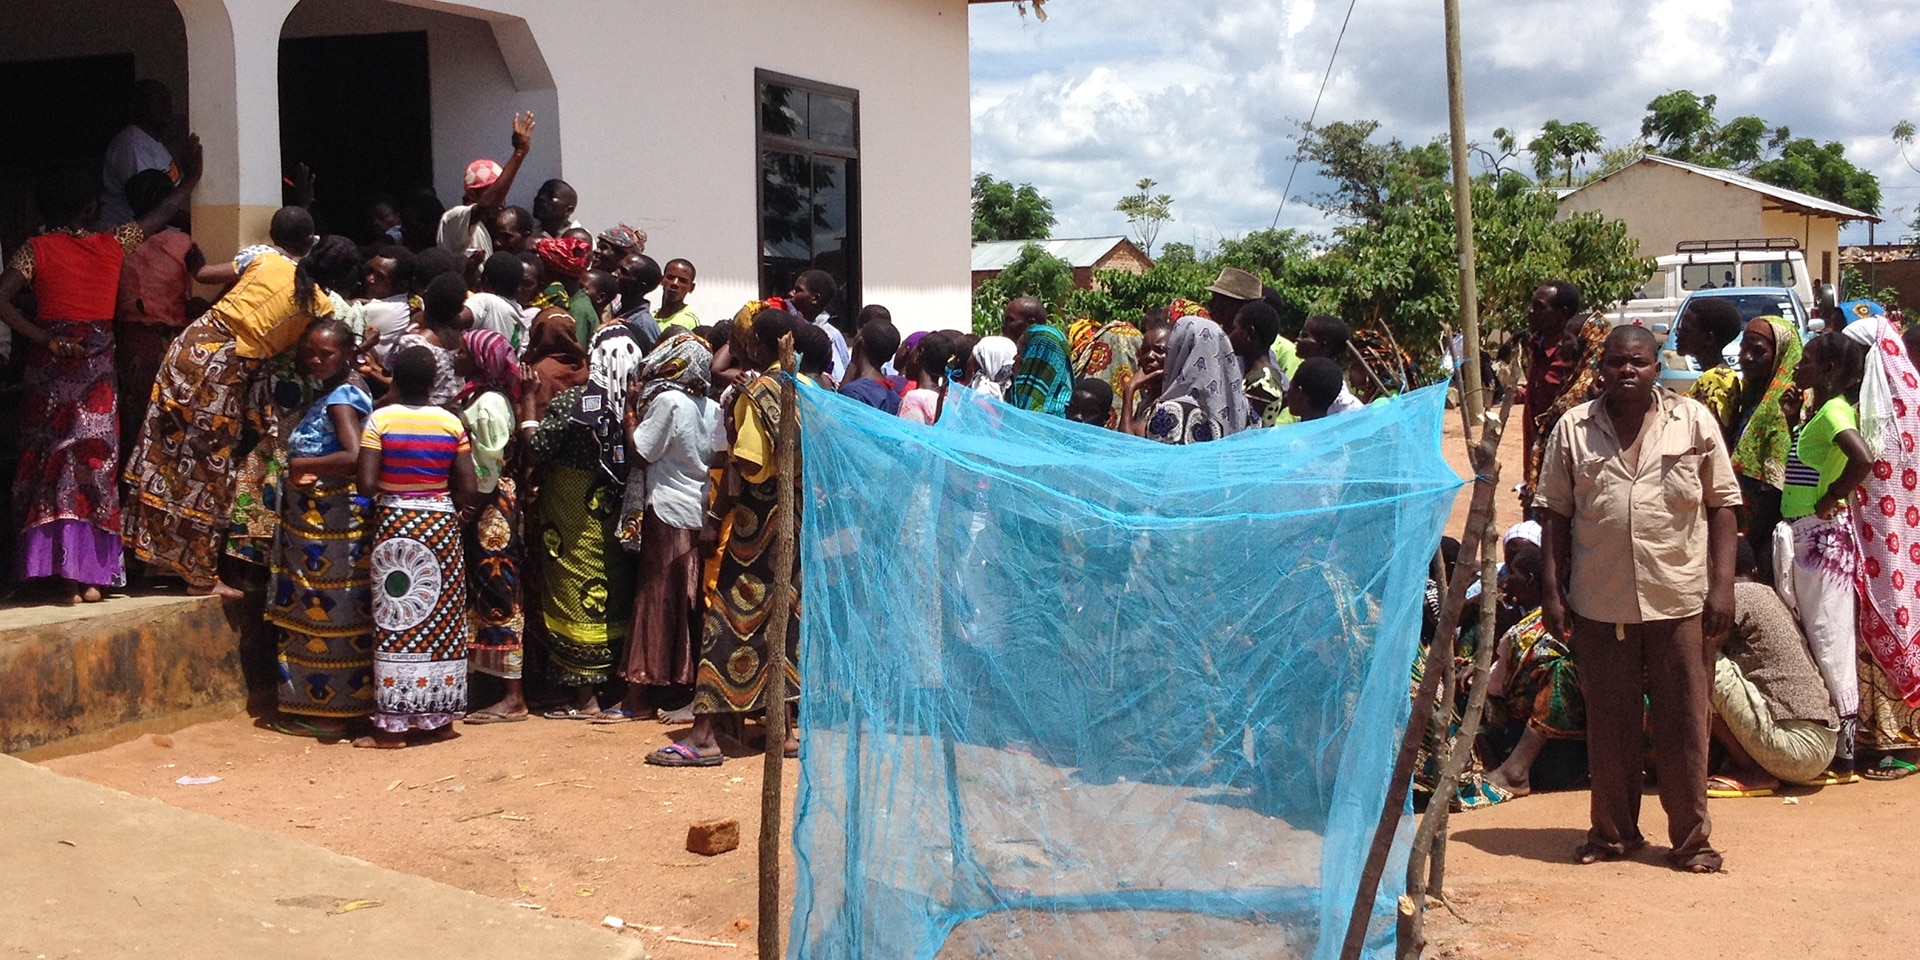 In un paese della Tanzania, molte persone sono in fila per ritirare le zanzariere. In primo piano, una zanzariera azzurra. 